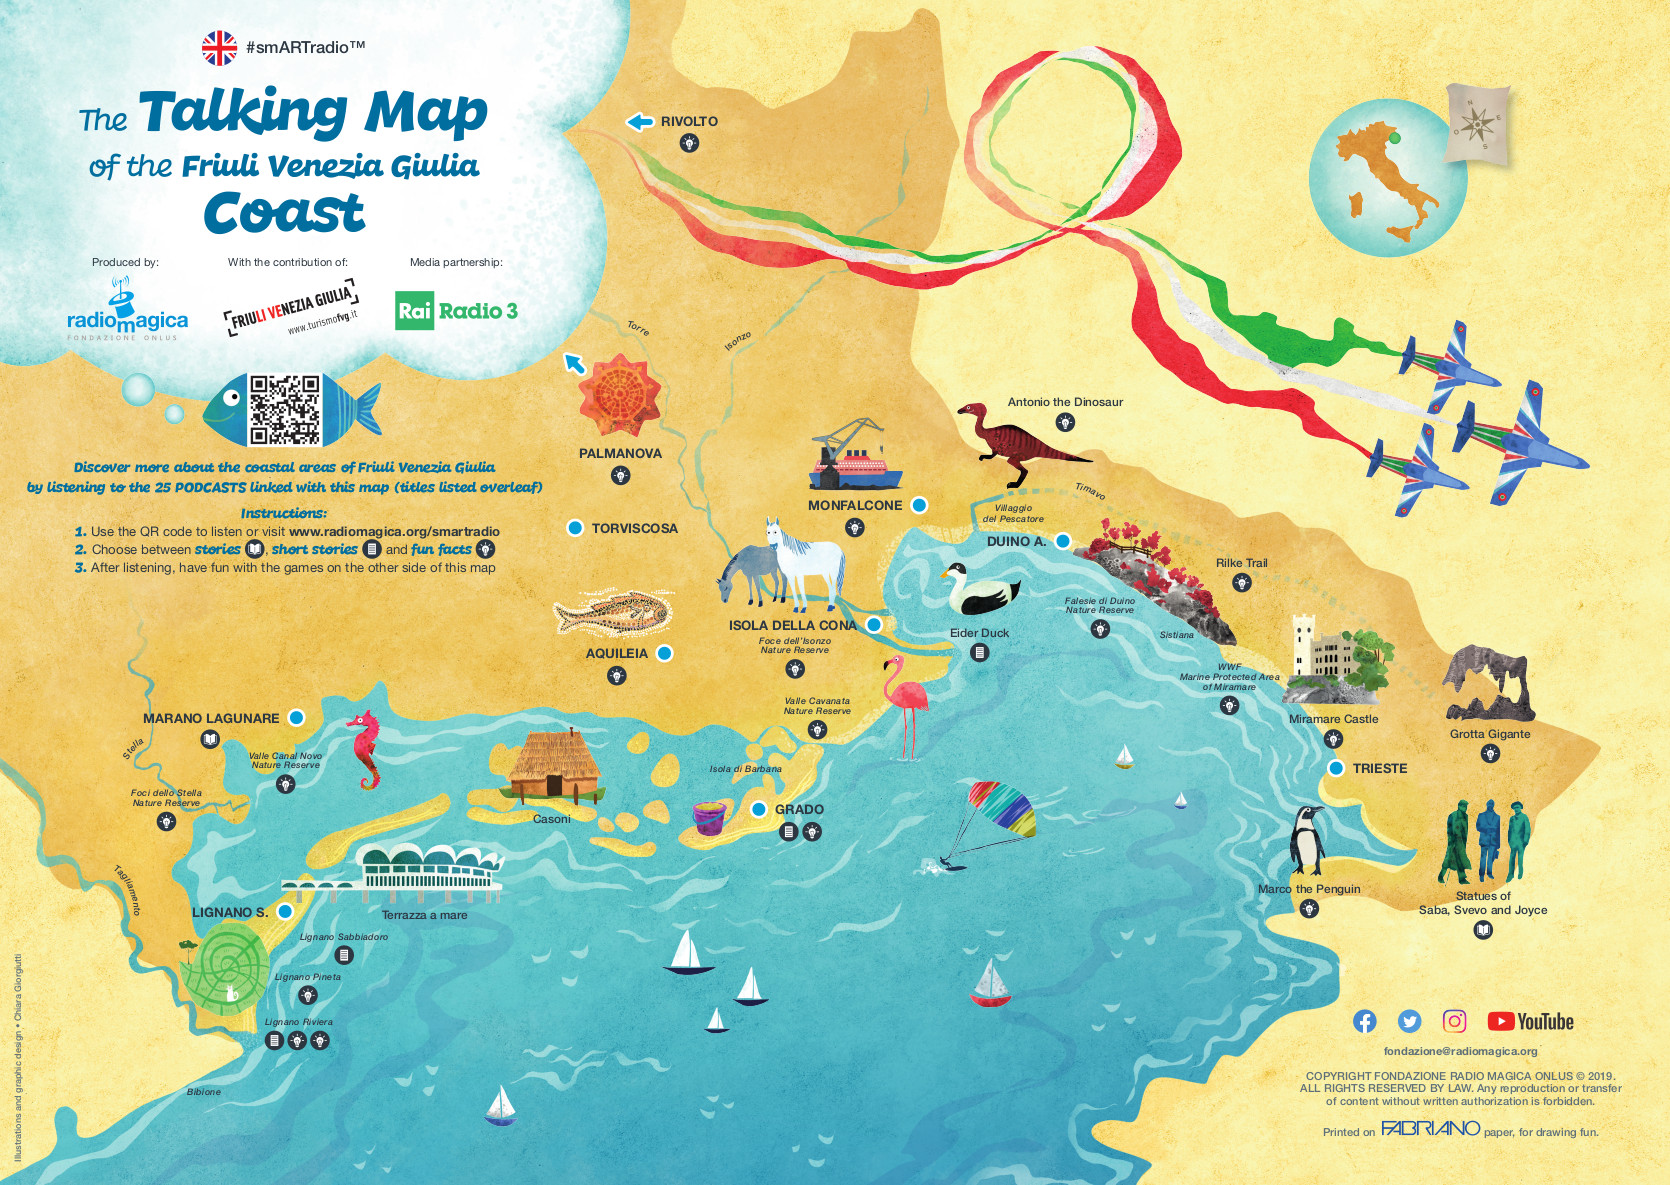 The Talking Map of the Friuli Venezia Giulia Coast